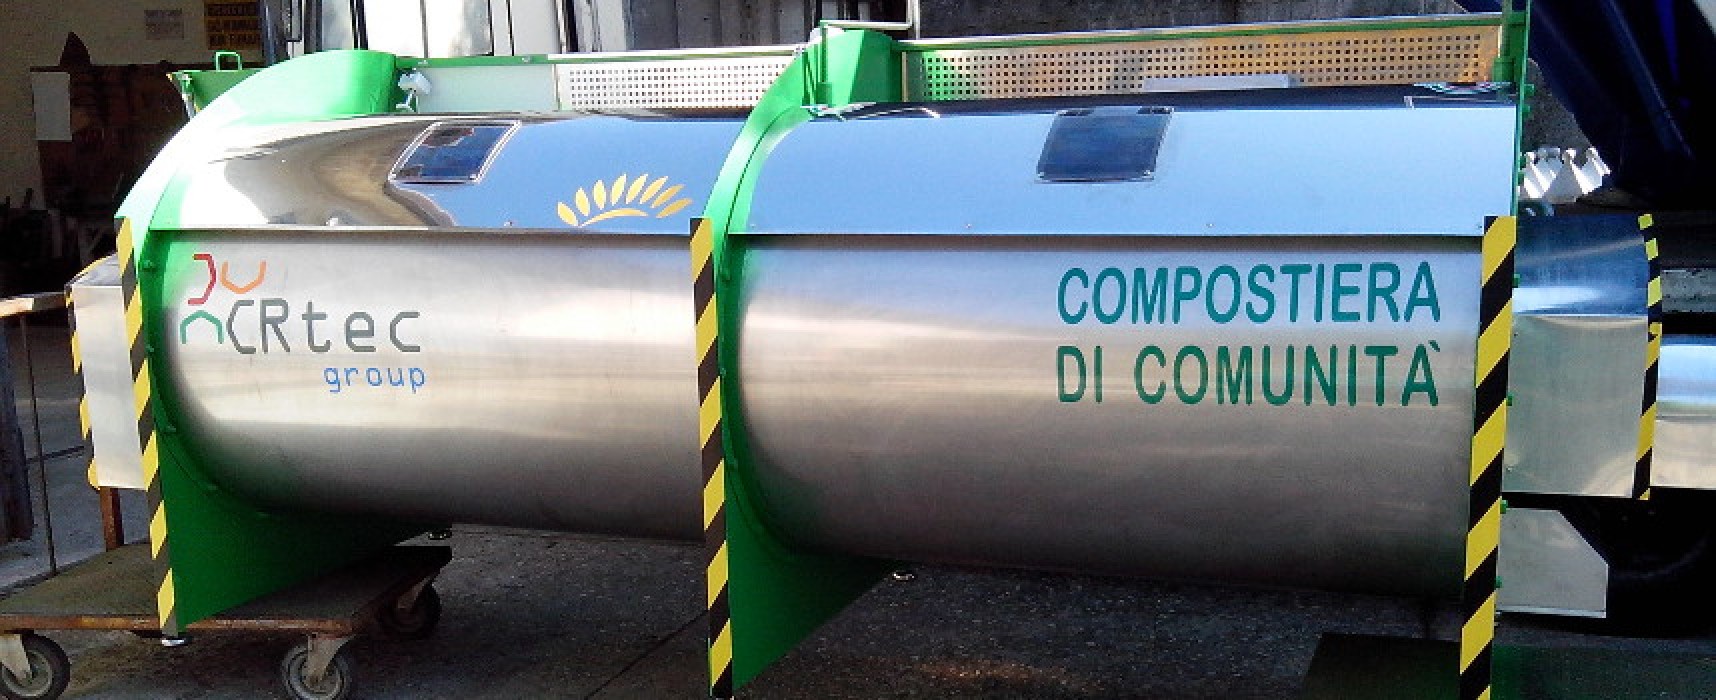 Centro di compostaggio collettivo in zona San Francesco, il Comune presenta il progetto